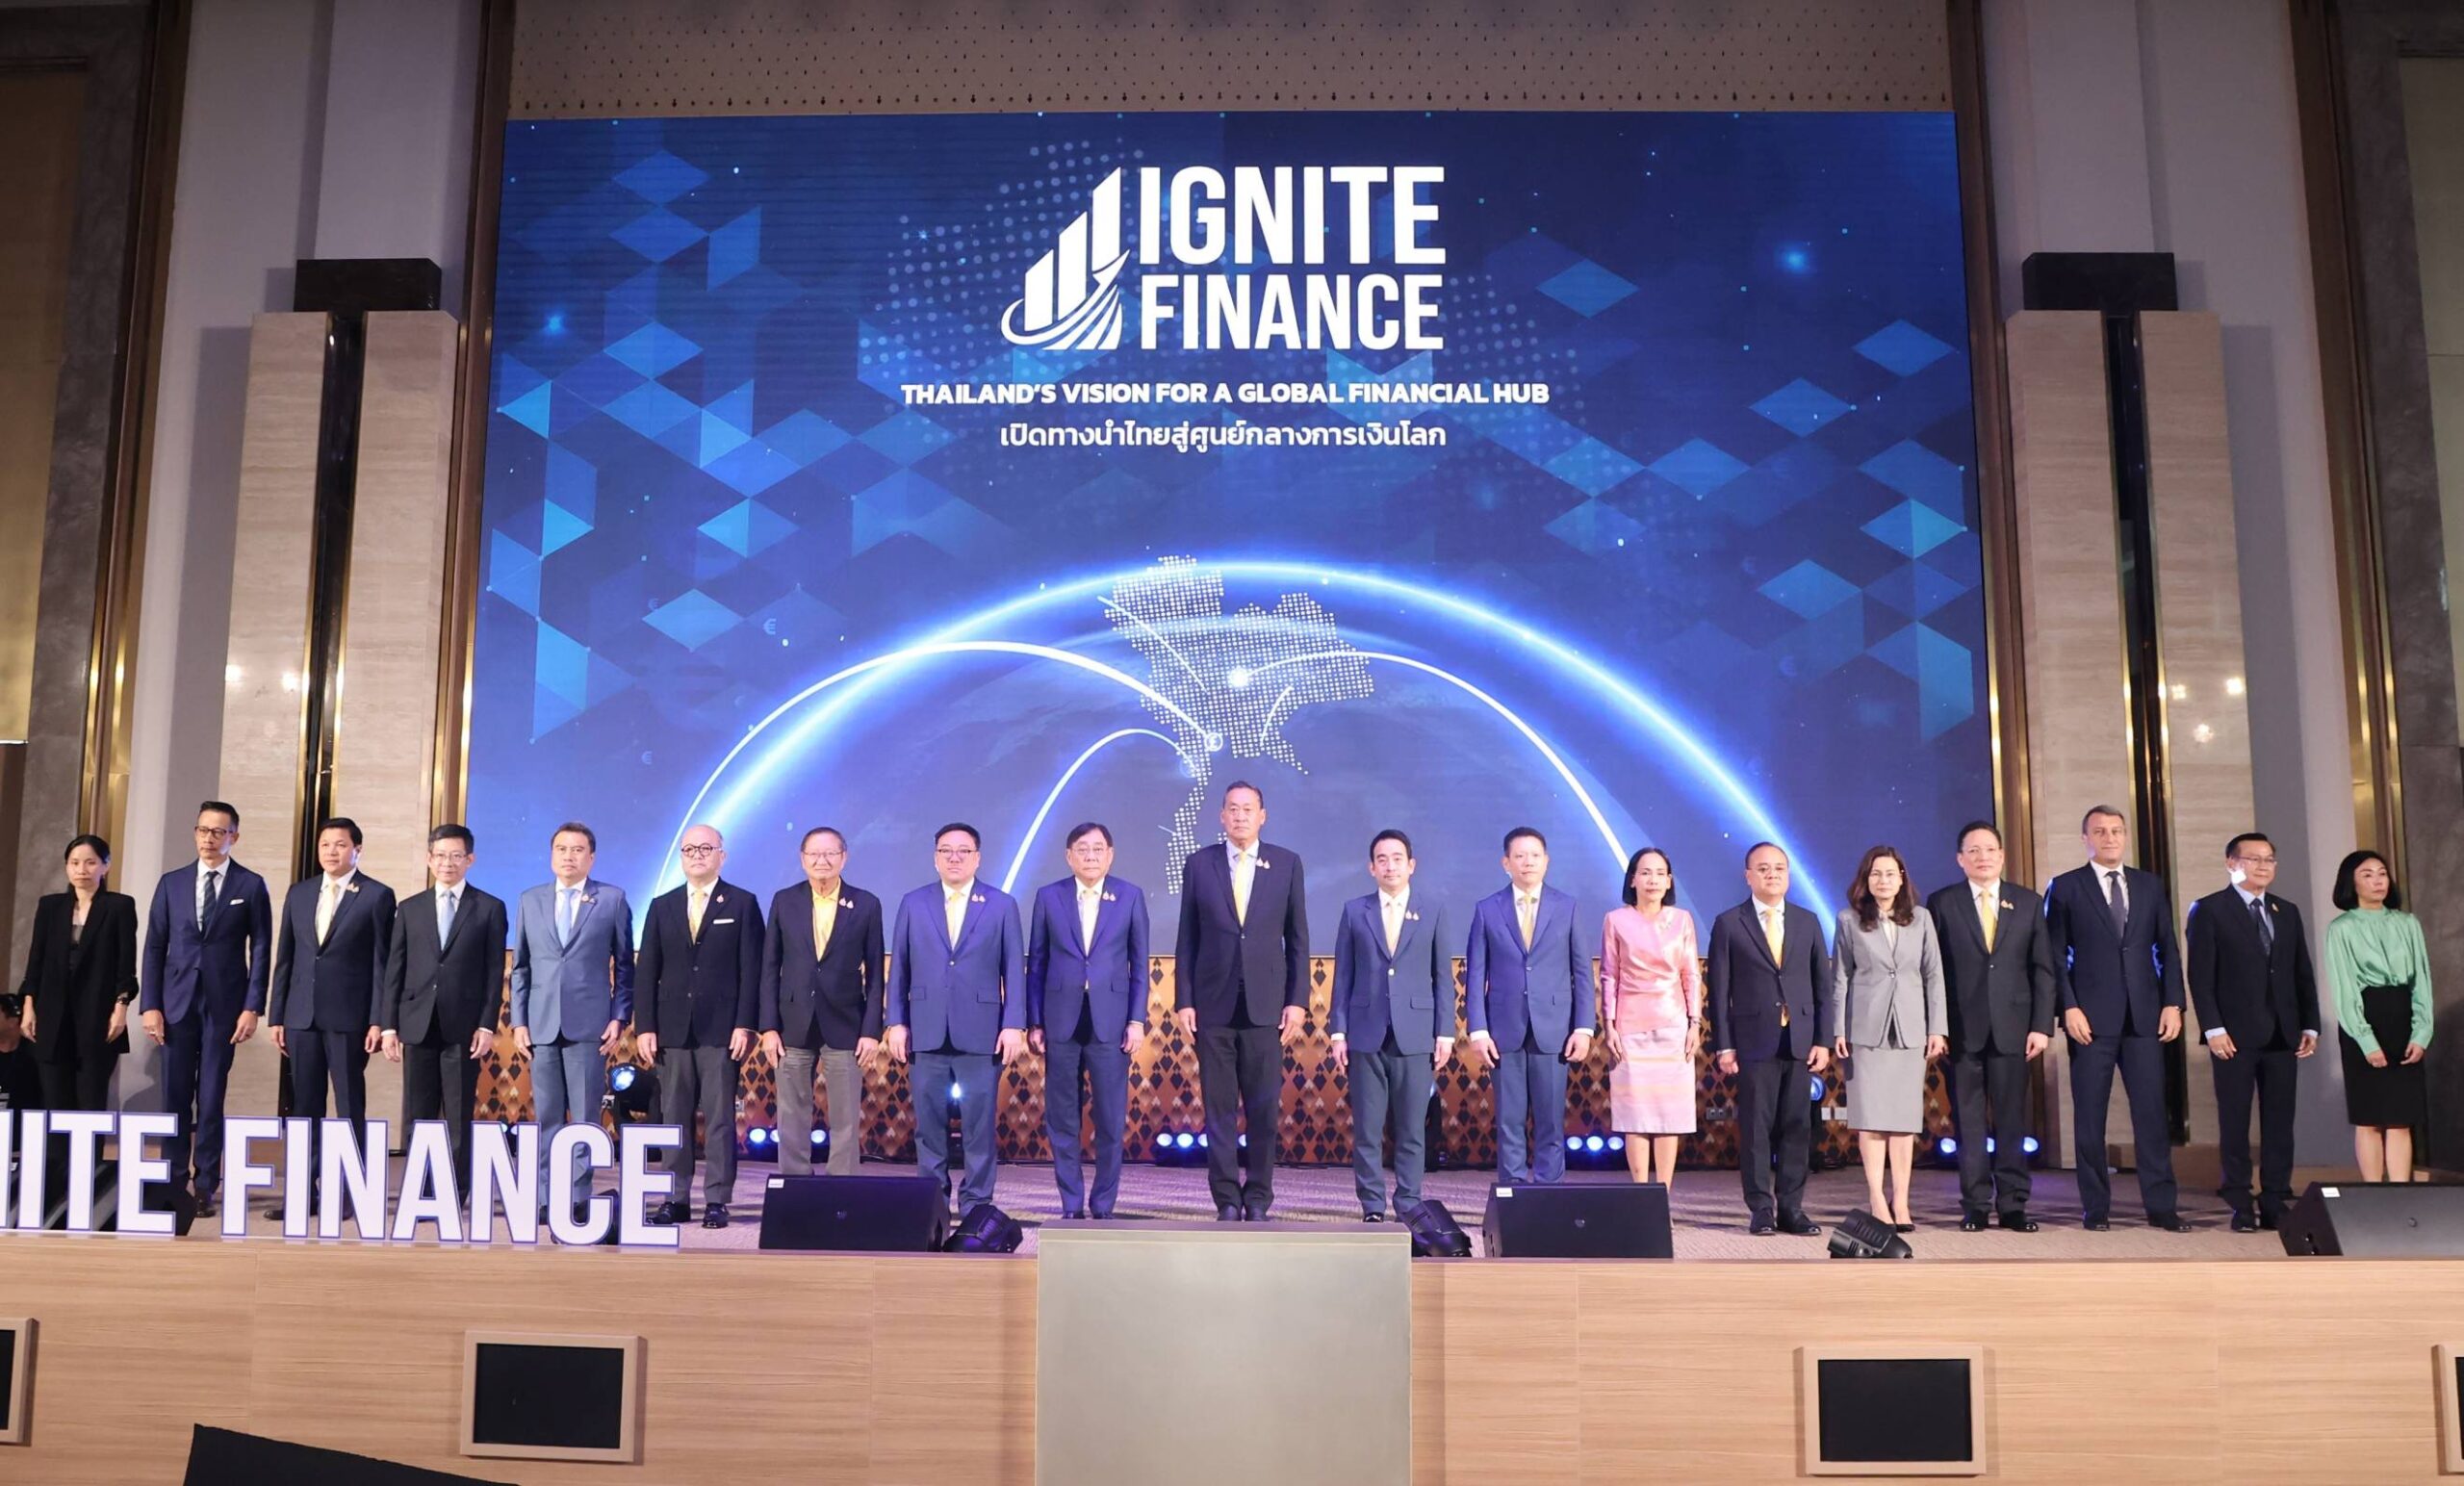 กระทรวงการคลังเปิดตัวโครงการ “Ignite Finance” เพื่อขับเคลื่อนประเทศไทยสู่การเป็นศูนย์กลางการเงินระดับโลก